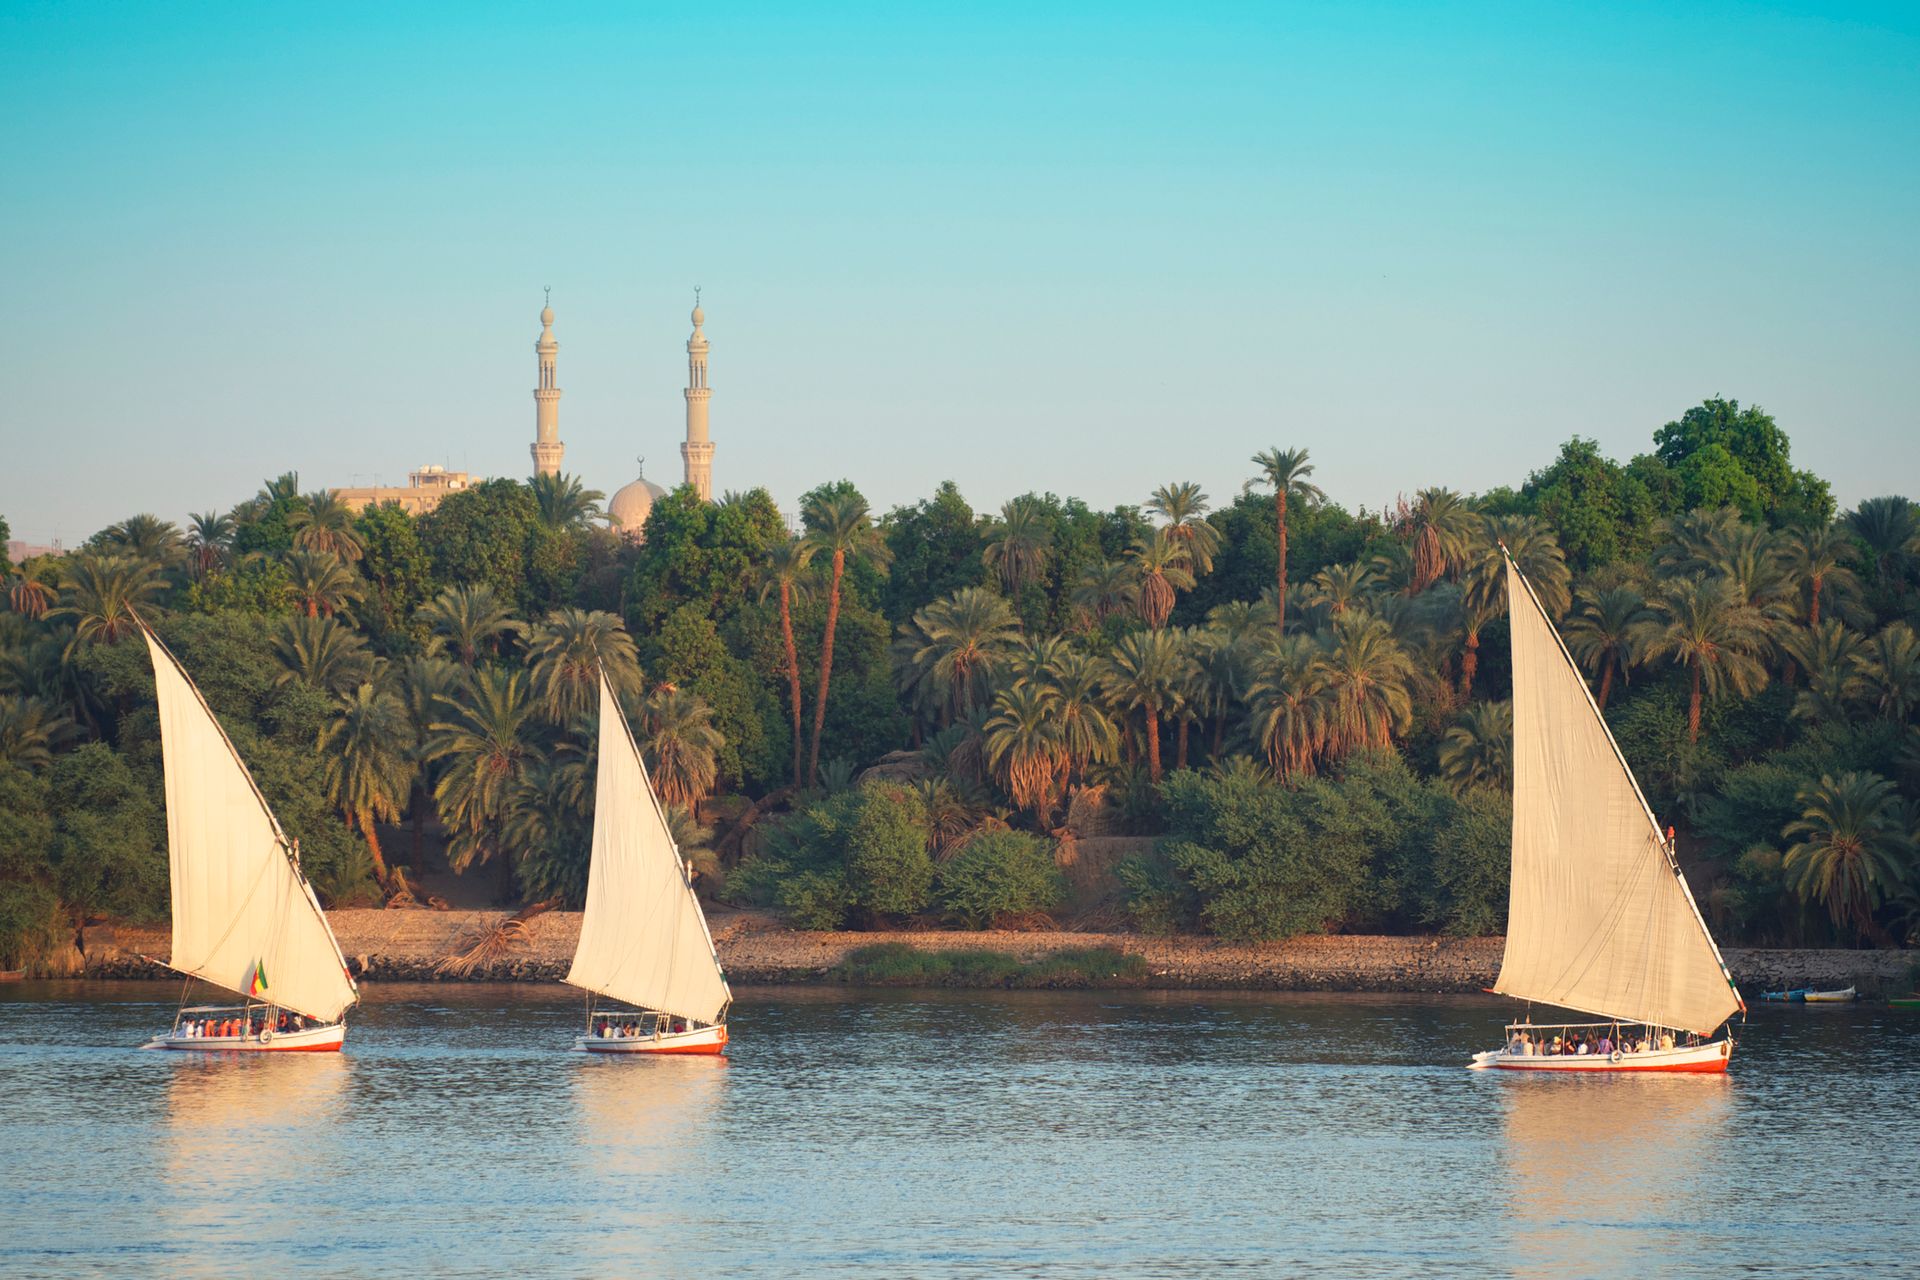 Des felouques sur le Nil, Assouan - Égypte ©iStock